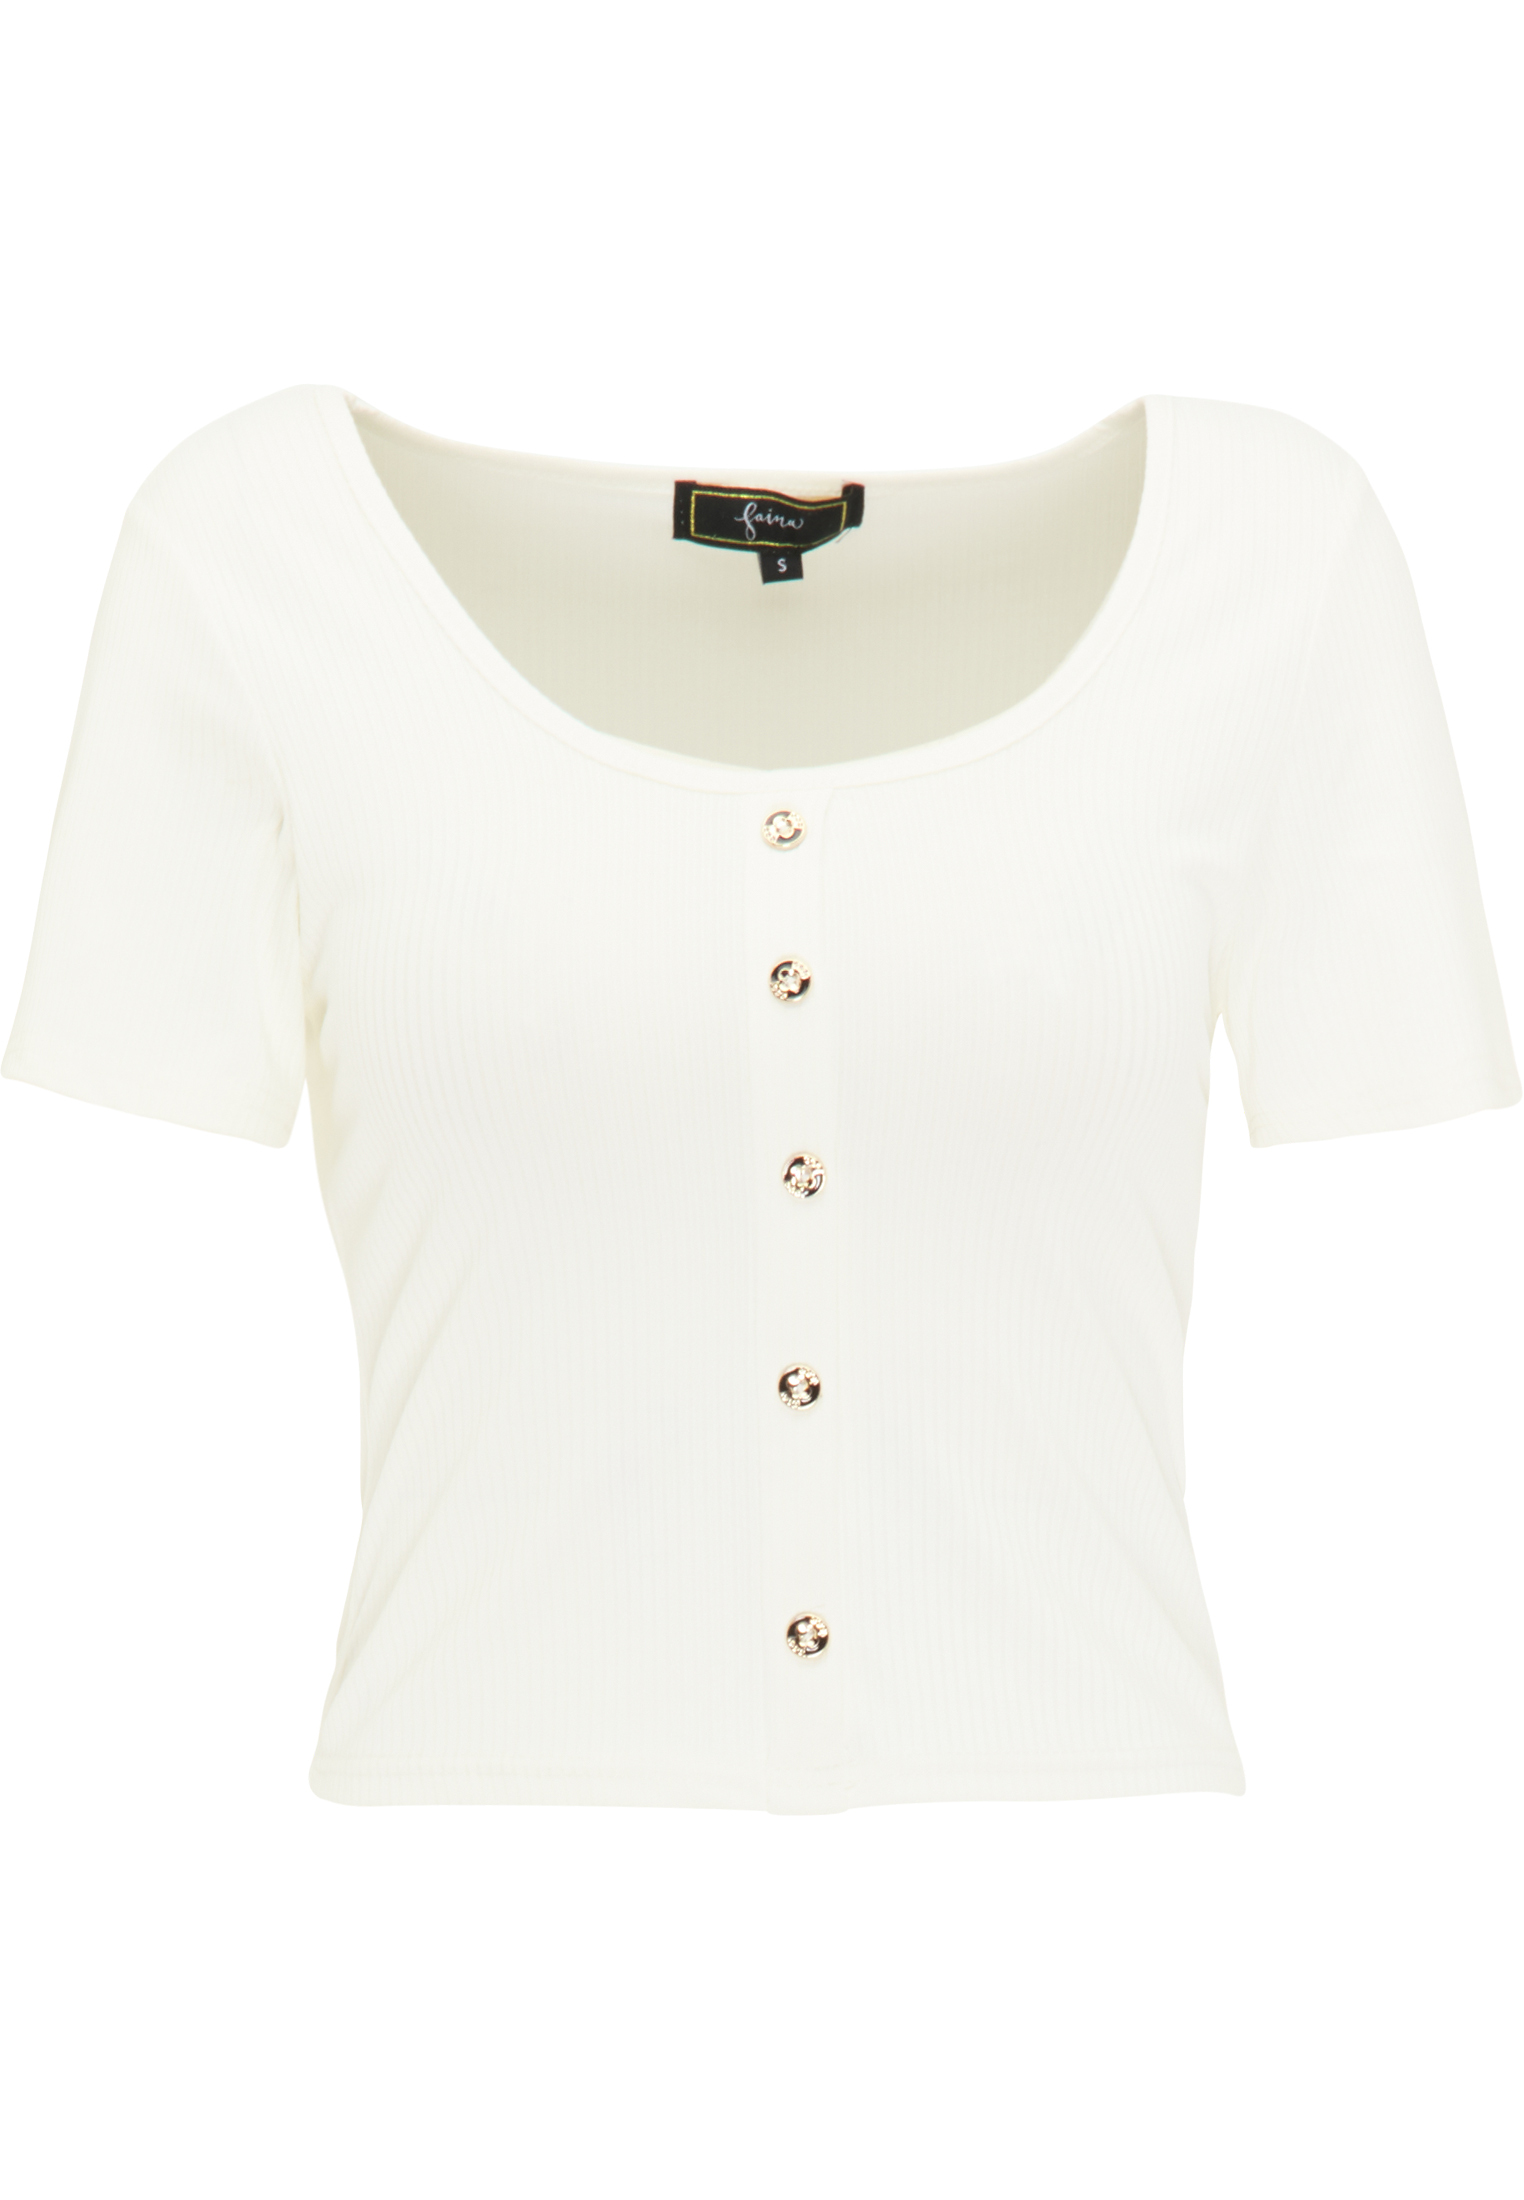 Odzież Koszulki & topy faina Koszulka w kolorze Białym 